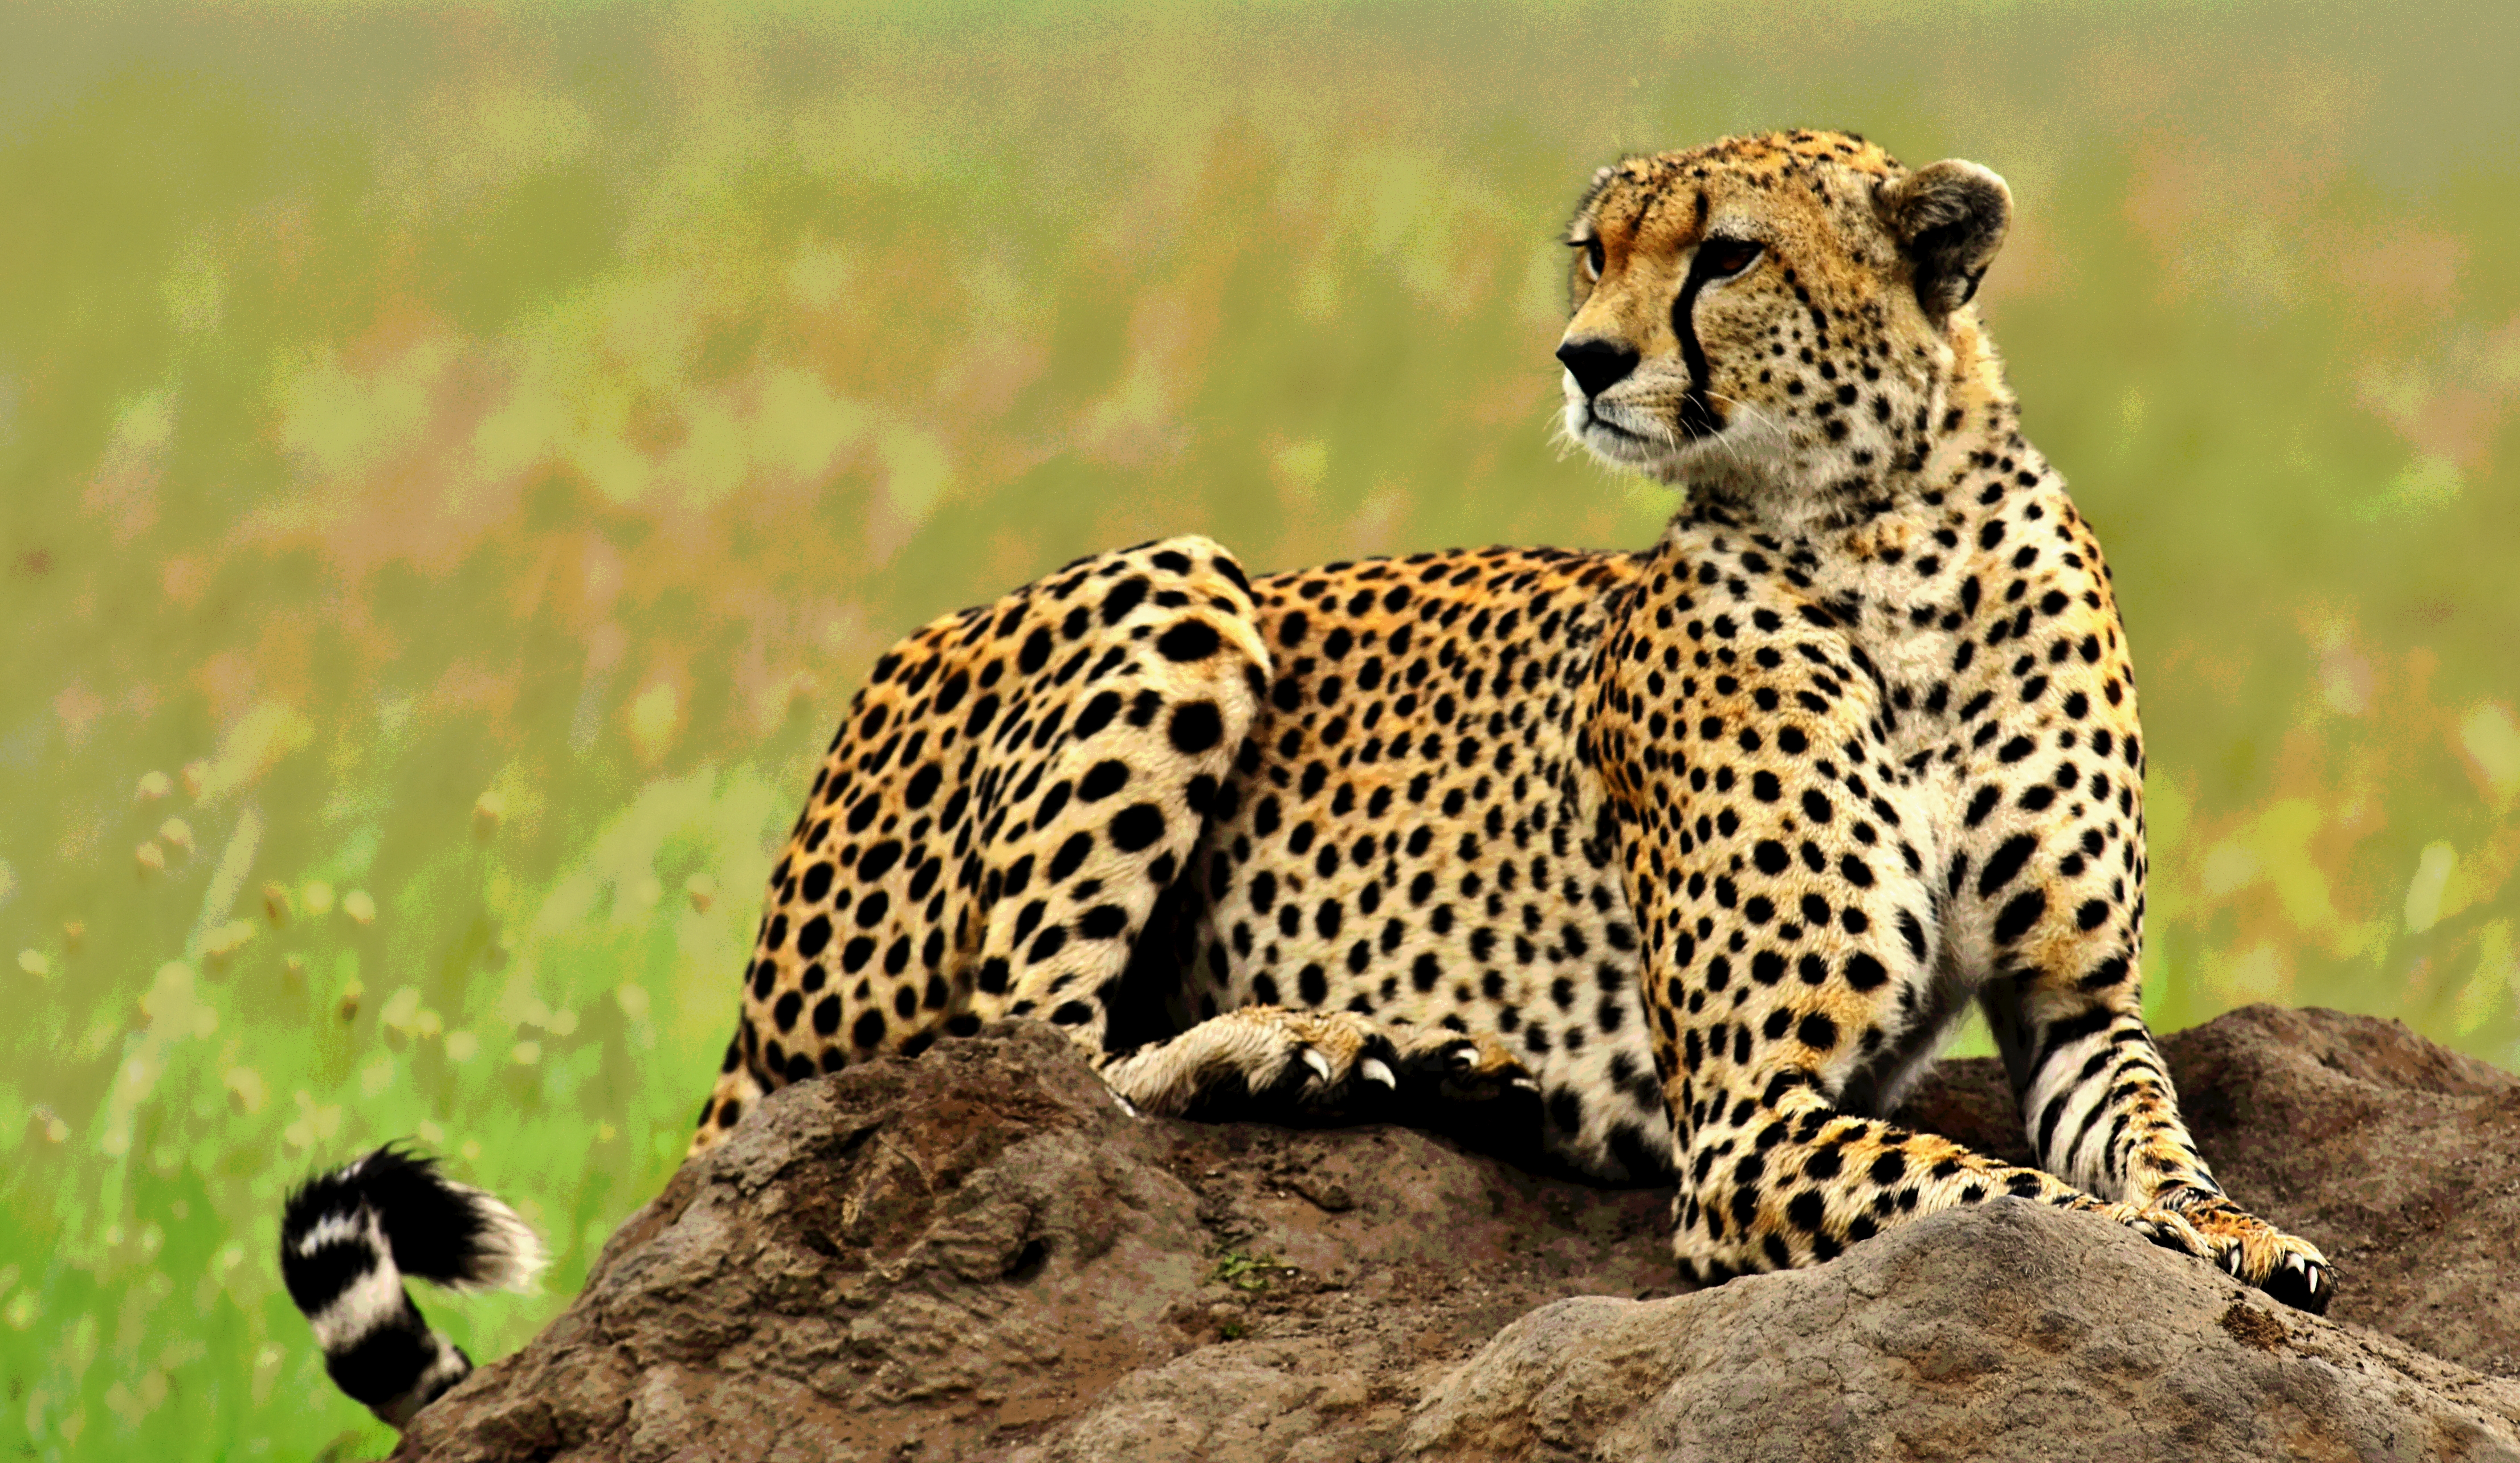 Africa Serengeti Tanzania 5658x3284